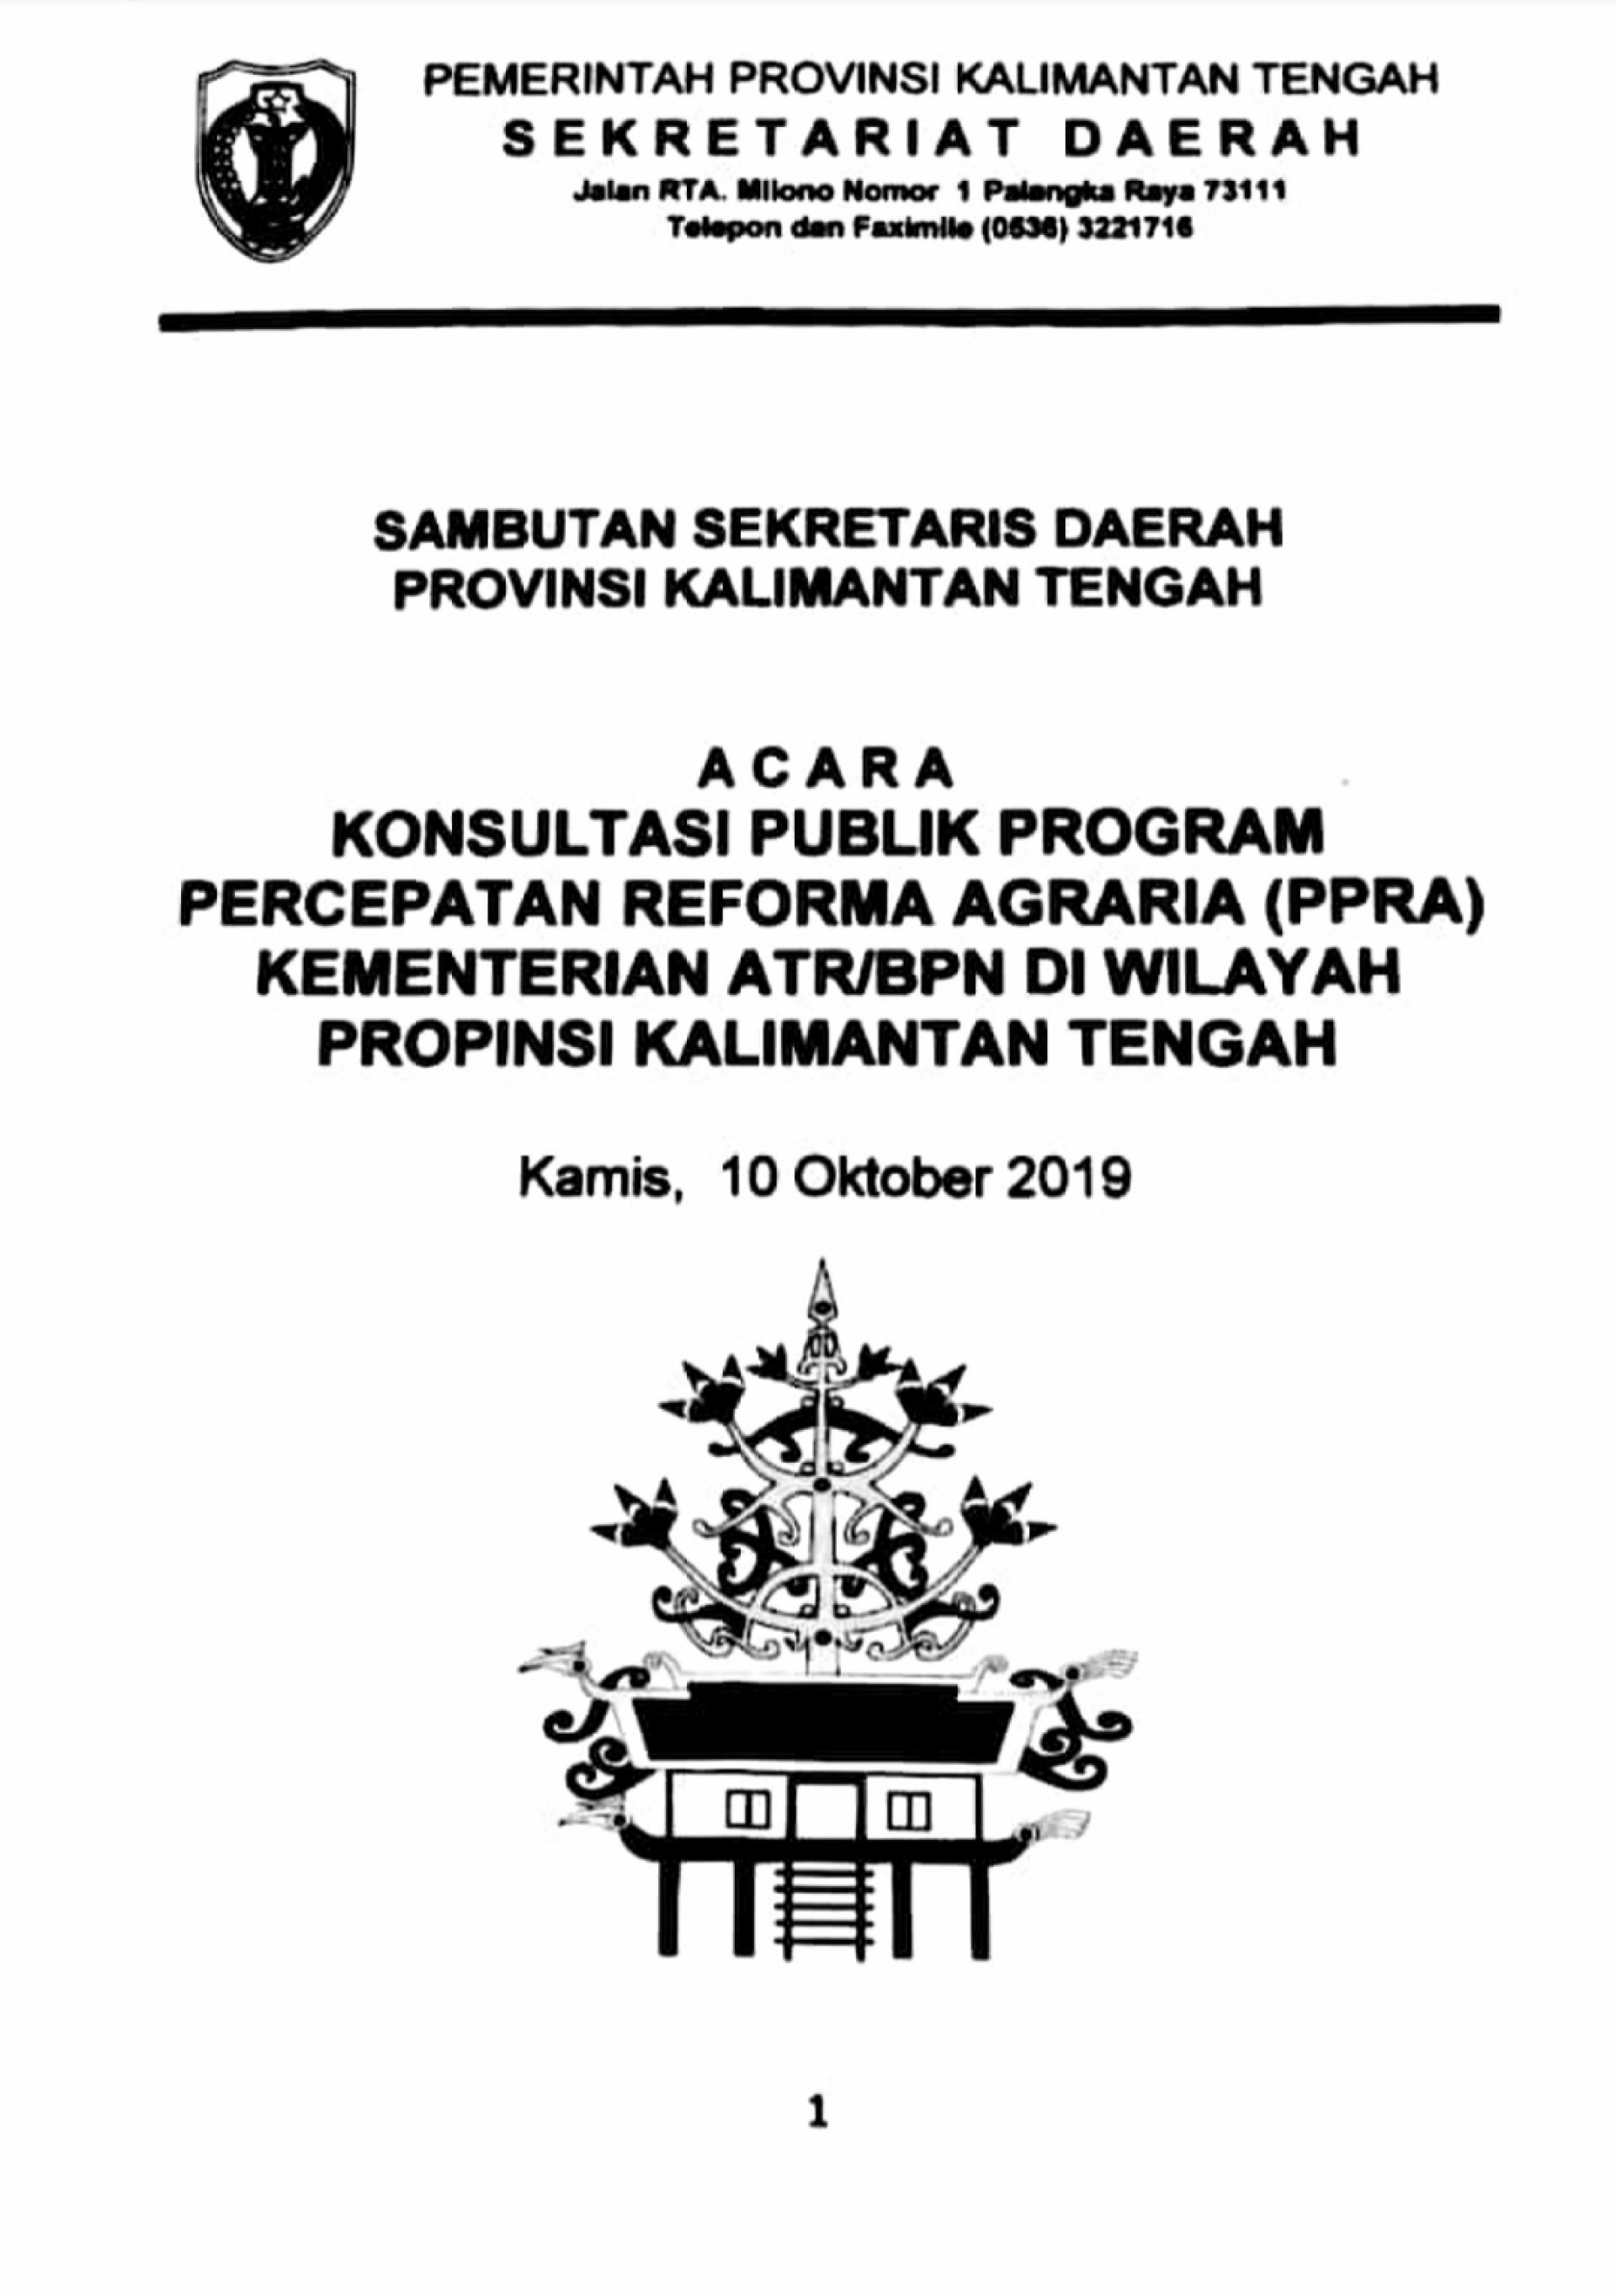 Sambutan Sekretaris Daerah Provinsi Kalimantan Tengah pada acara Konsultasi Publik Percepatan Program Reforma Agraria Kementerian ATR/BPN Tahun 2019